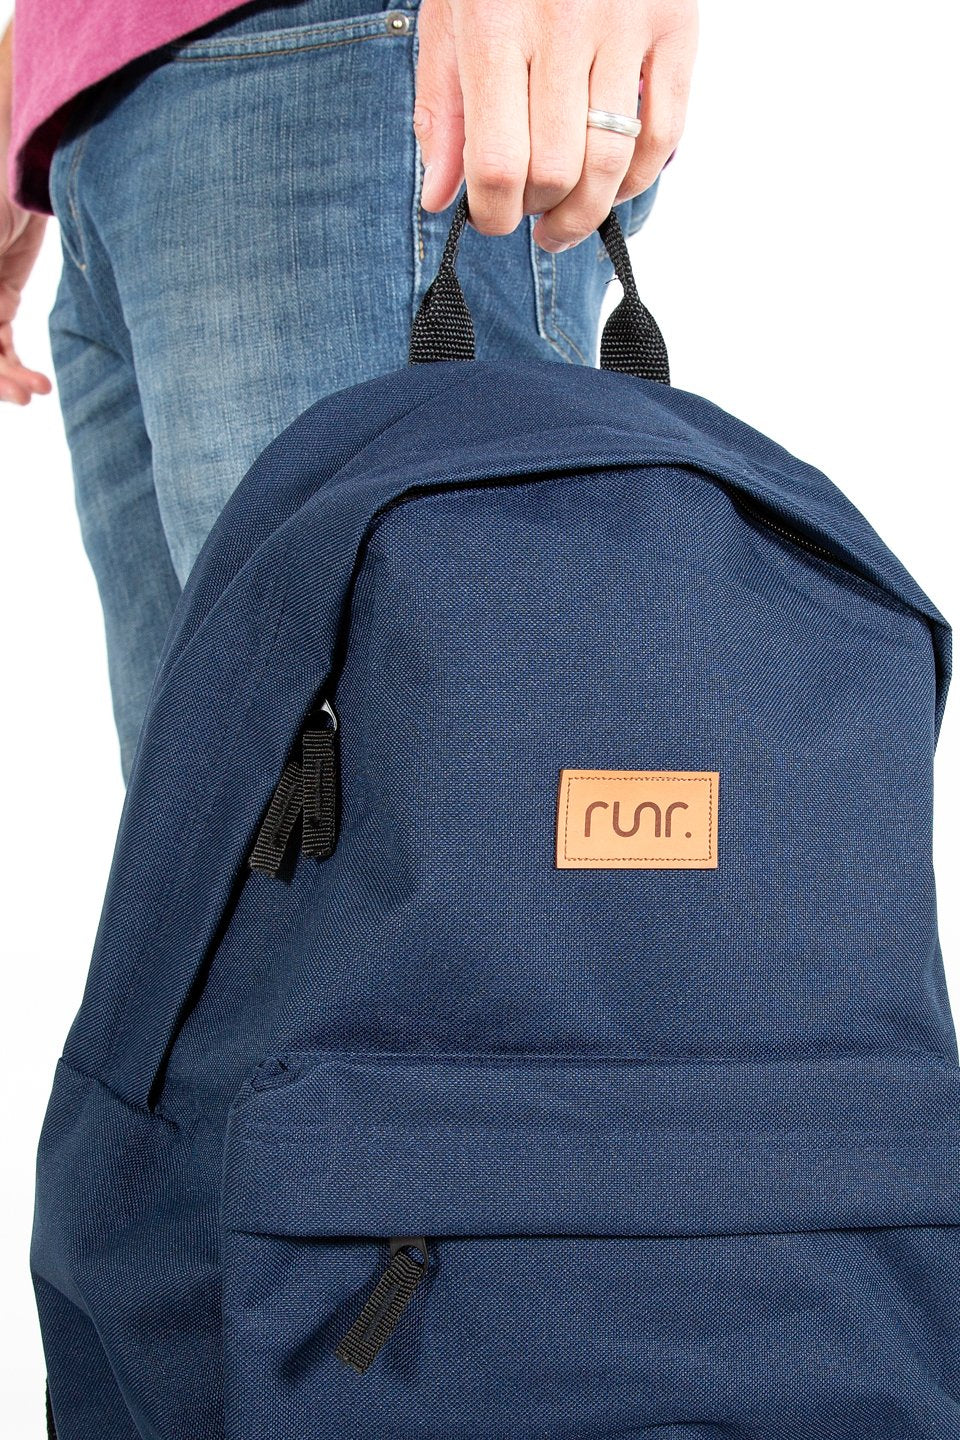 Runr Go Backpack - Navy